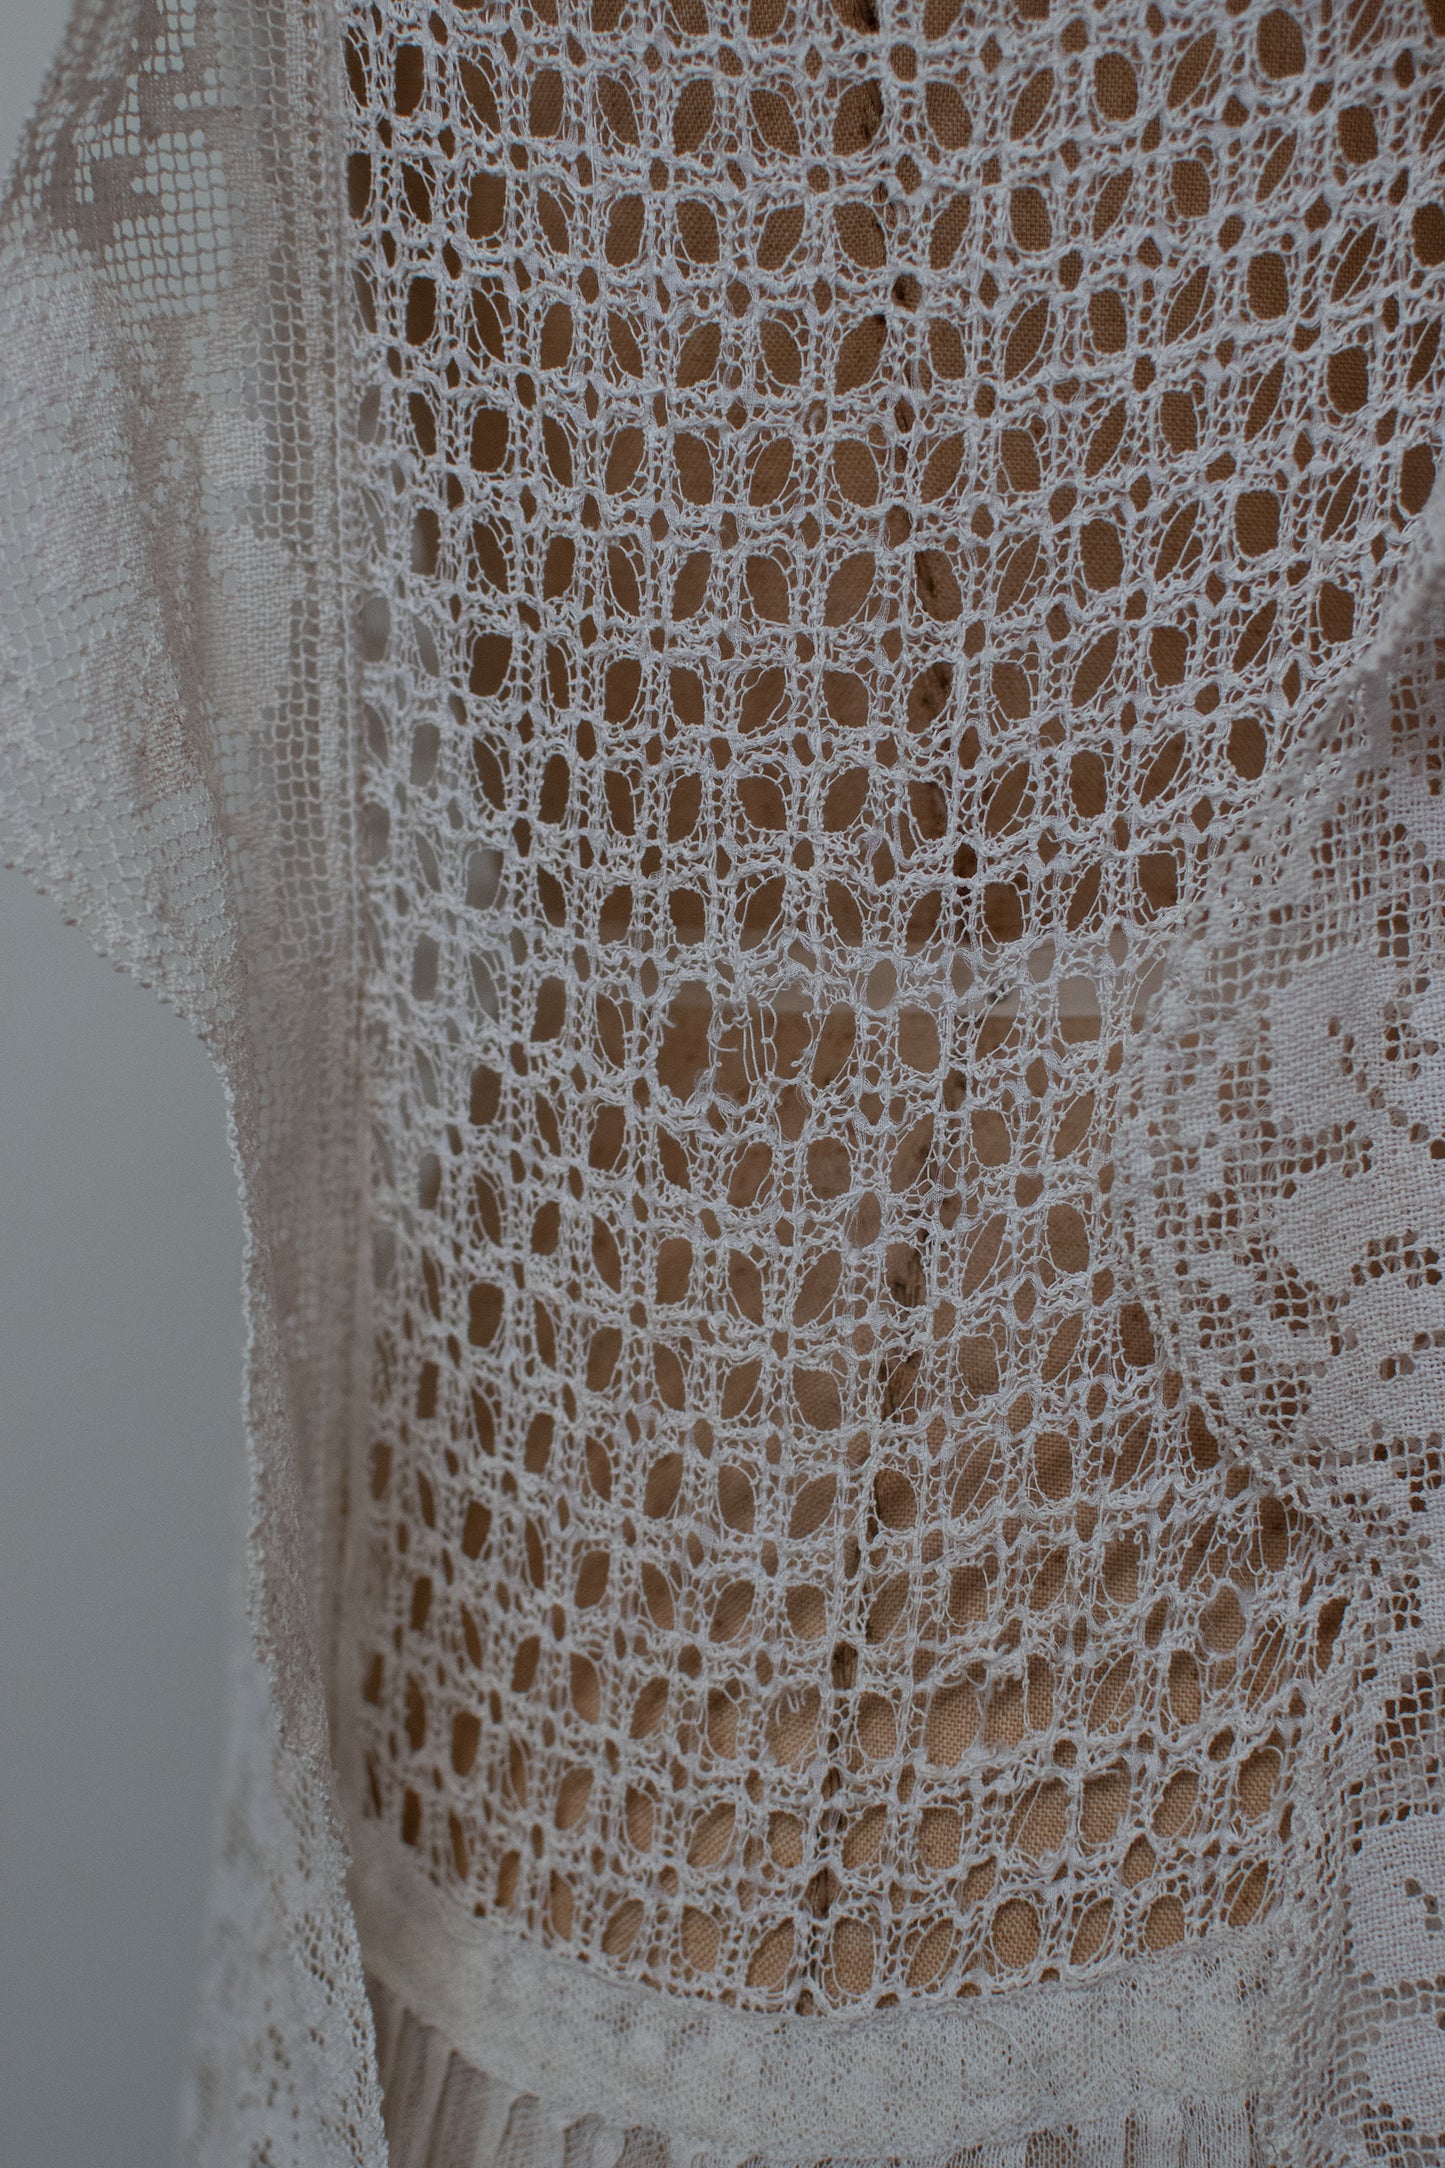 1920s Lace Dress